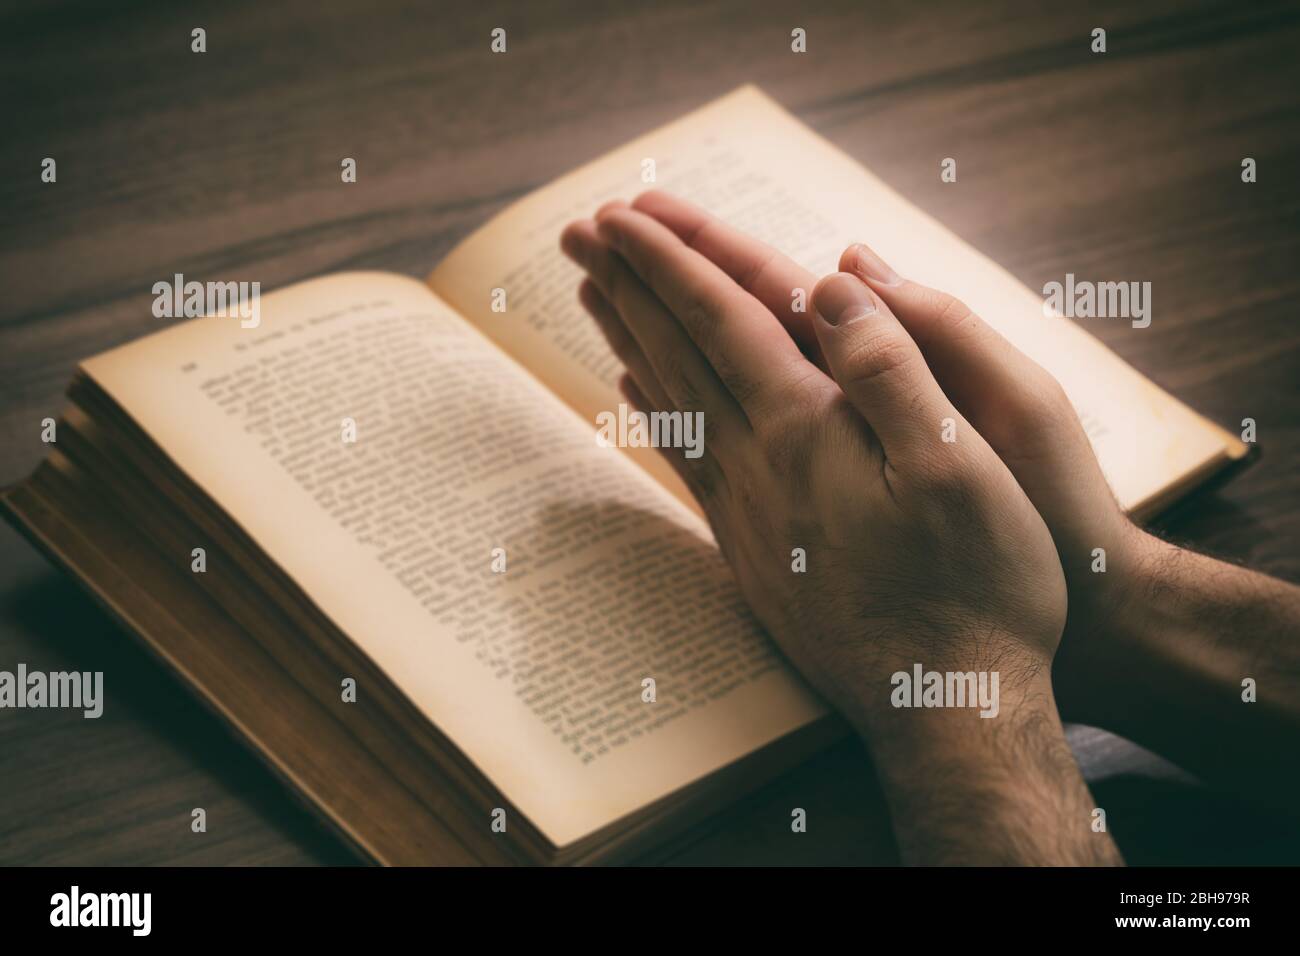 Gebet, Mann überreicht ein offenes Buch Heilige Bibel, hölzerner Schreibtisch Hintergrund. Konzept von Glaube, Religion und Spiritualität Stockfoto